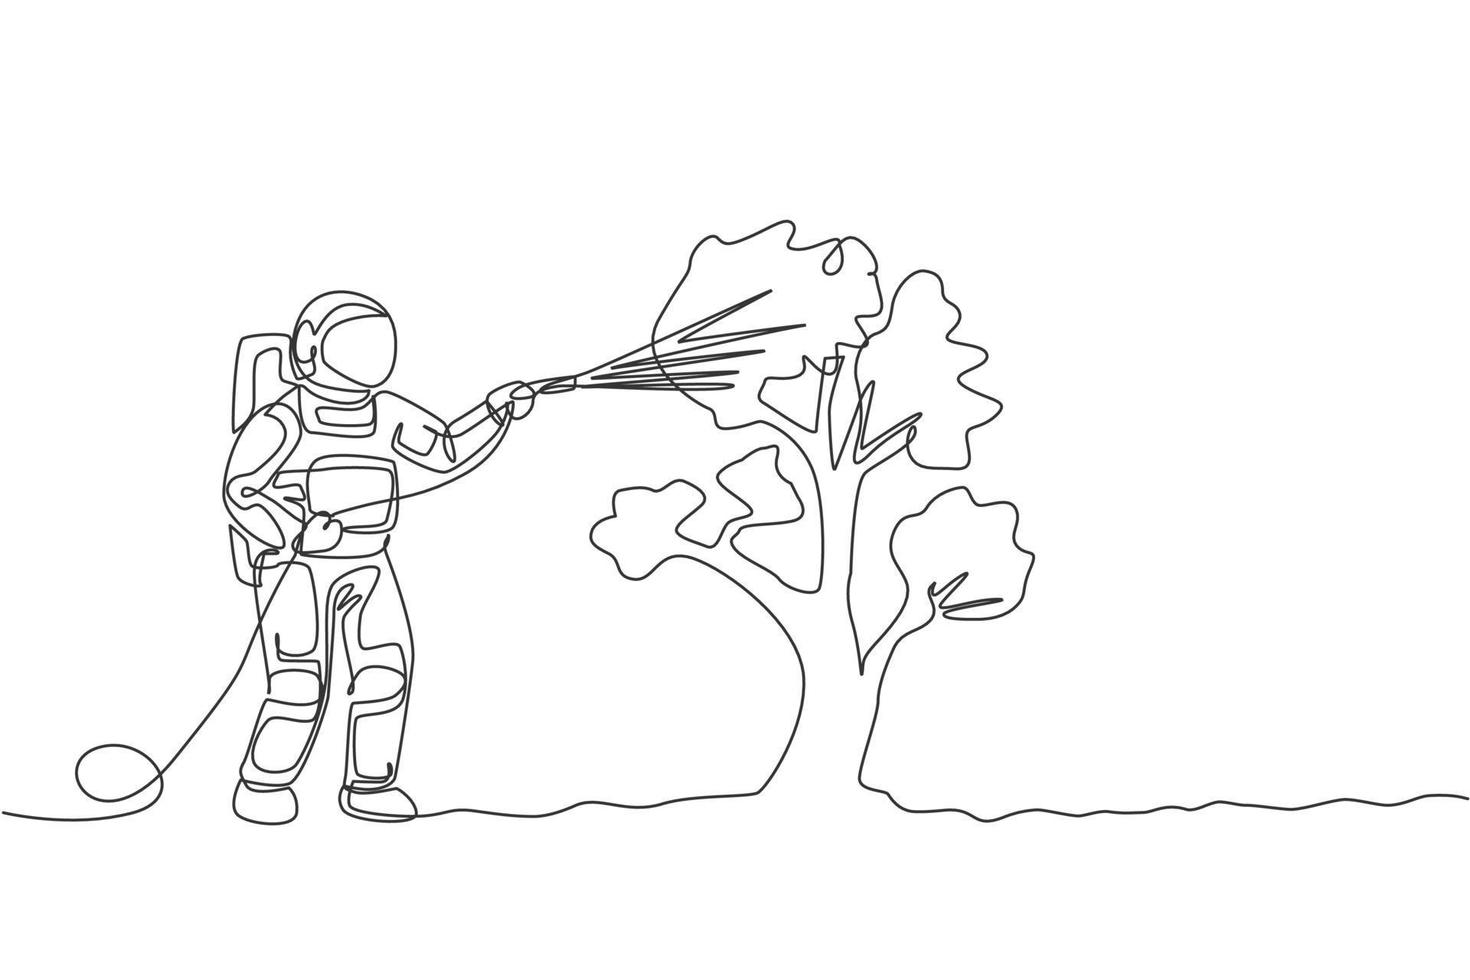 en kontinuerlig linjeteckning av rymdmannen vattnar växtträd med metallplastslang i månens yta. djupt rymd jordbruk astronaut koncept. dynamisk enkel linje rita design vektor grafisk illustration